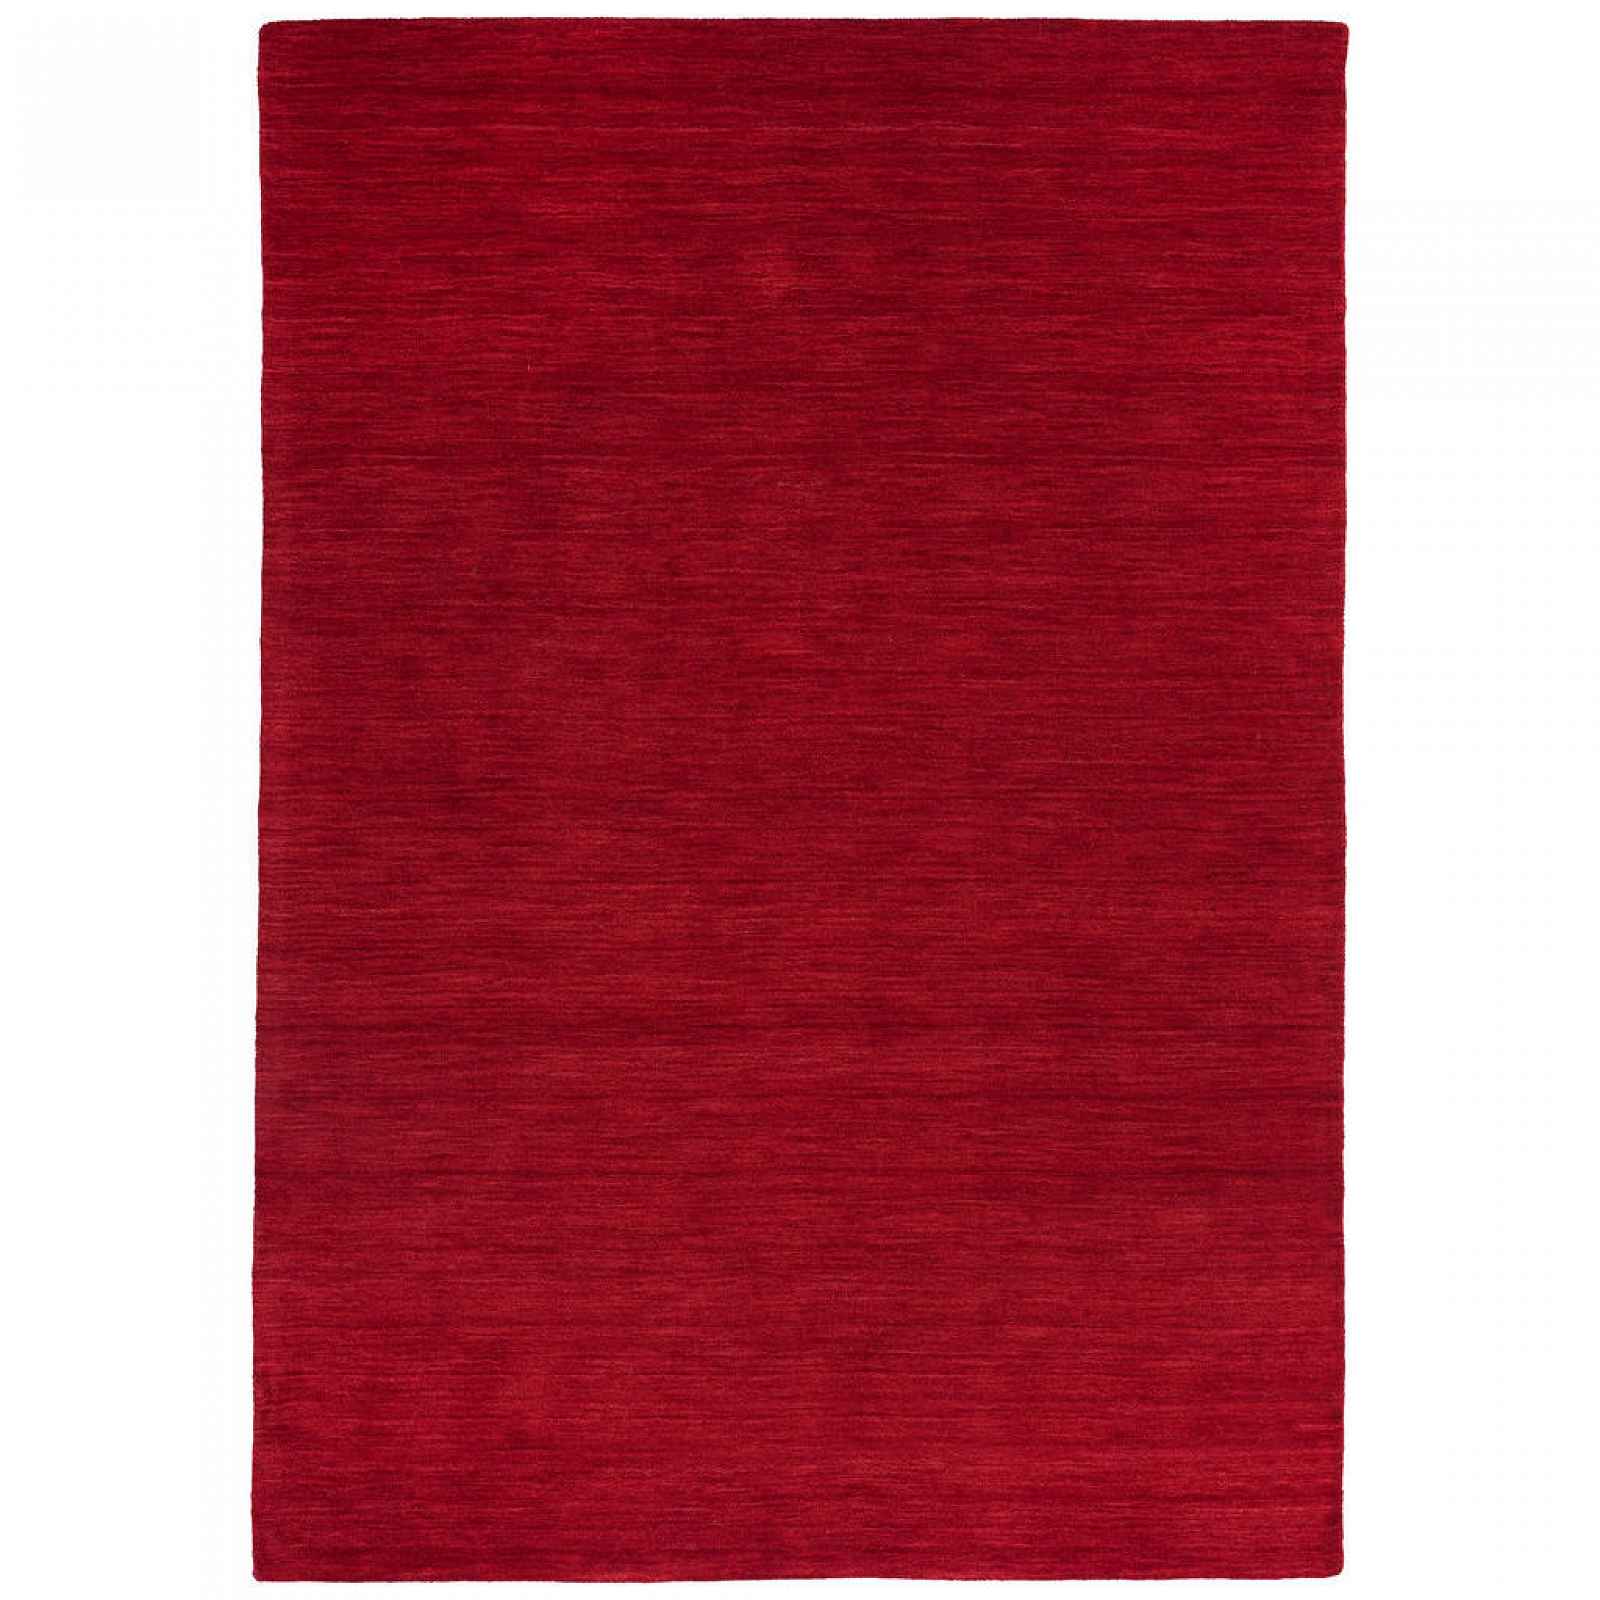 XXXLutz ORIENTÁLNÍ KOBEREC, 60/90 cm, červená Esposa - Orientální koberce - 004345048250